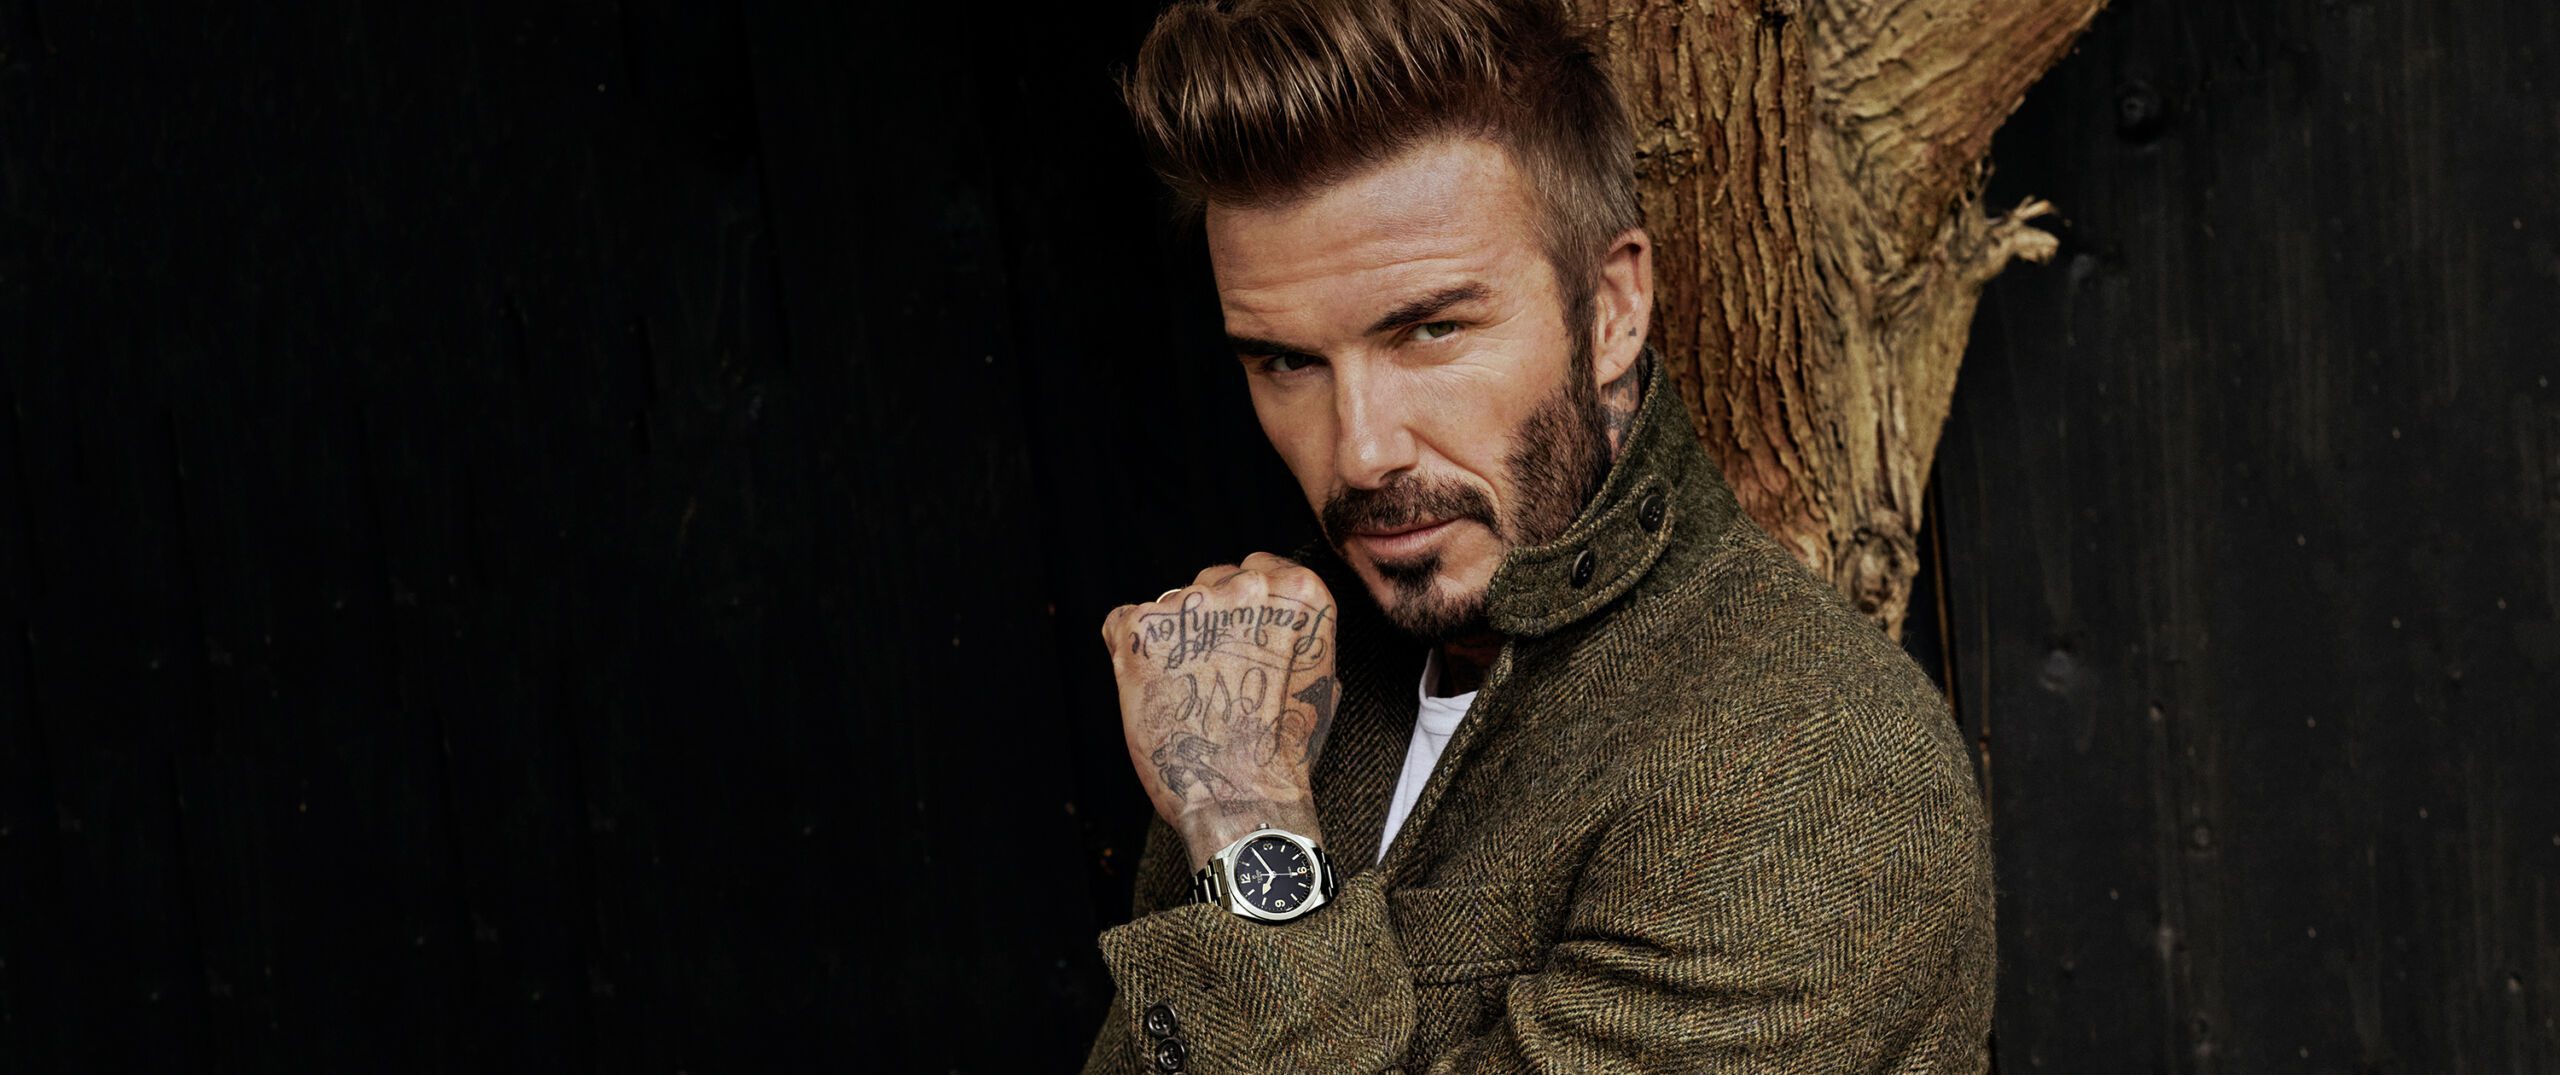 David Beckham: The Modern Gentleman